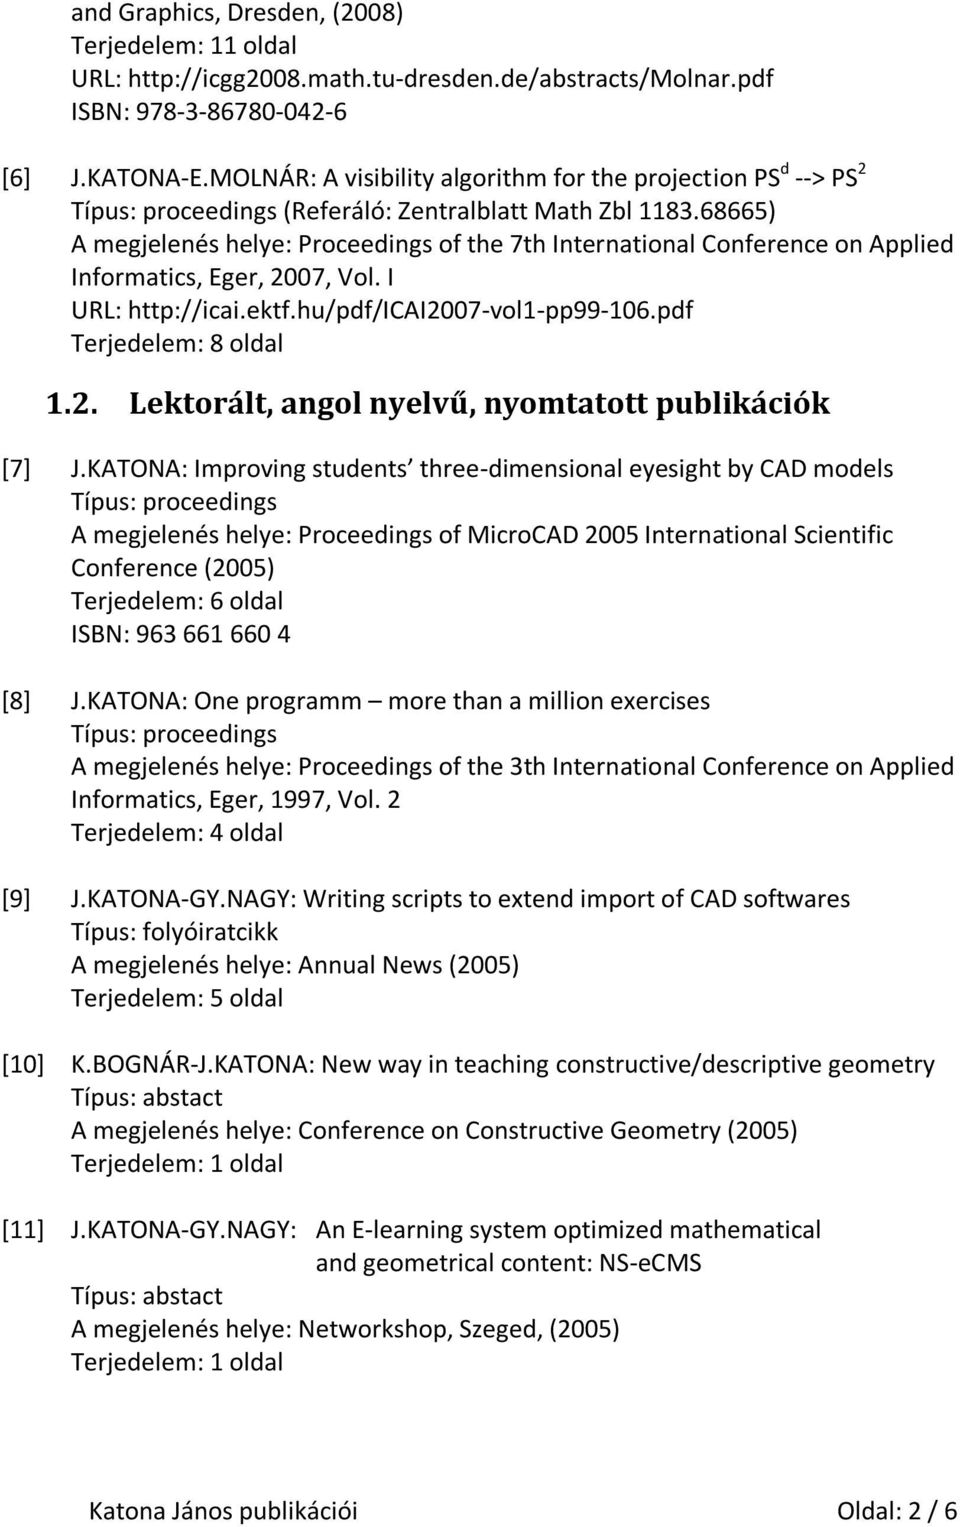 68665) A megjelenés helye: Proceedings of the 7th International Conference on Applied Informatics, Eger, 2007, Vol. I URL: http://icai.ektf.hu/pdf/icai2007-vol1-pp99-106.pdf Terjedelem: 8 oldal 1.2. Lektorált, angol nyelvű, nyomtatott publikációk [7] J.